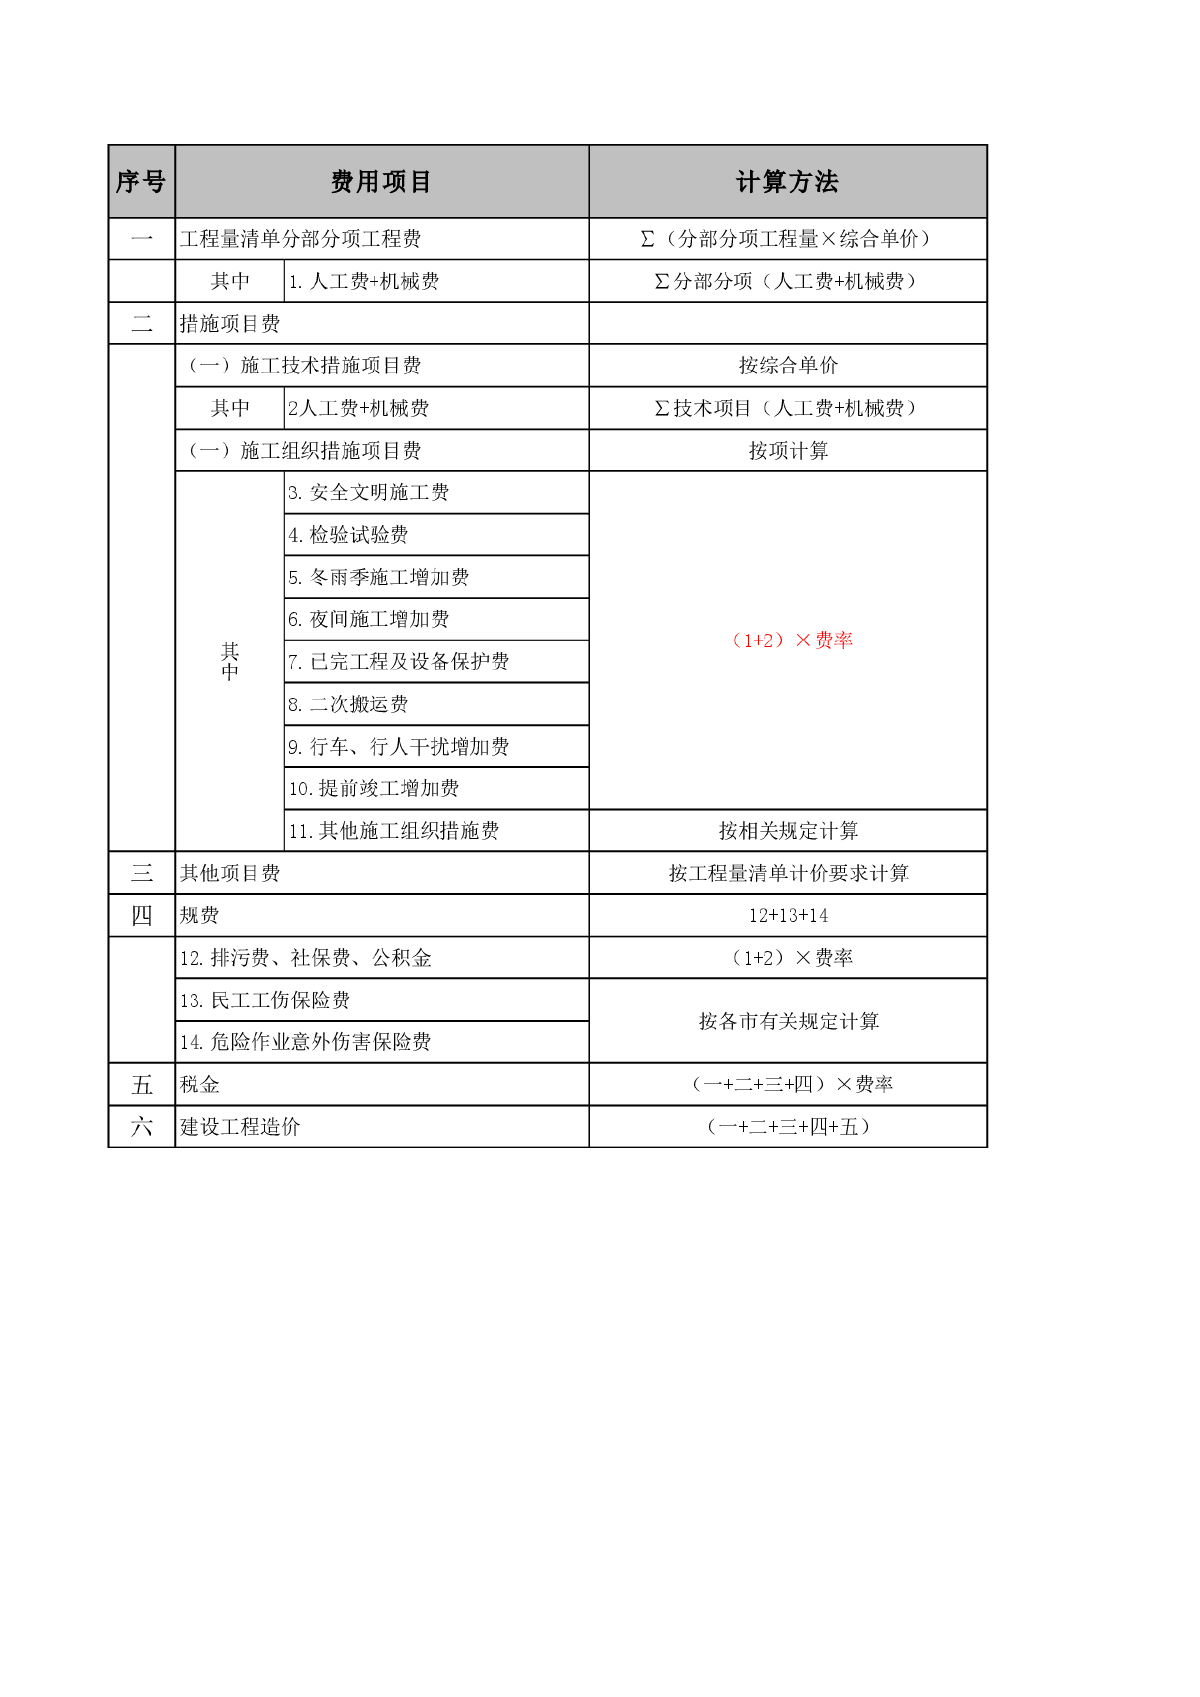 建设工程施工费用计算程序(综合单价法)(浙江省2010版)